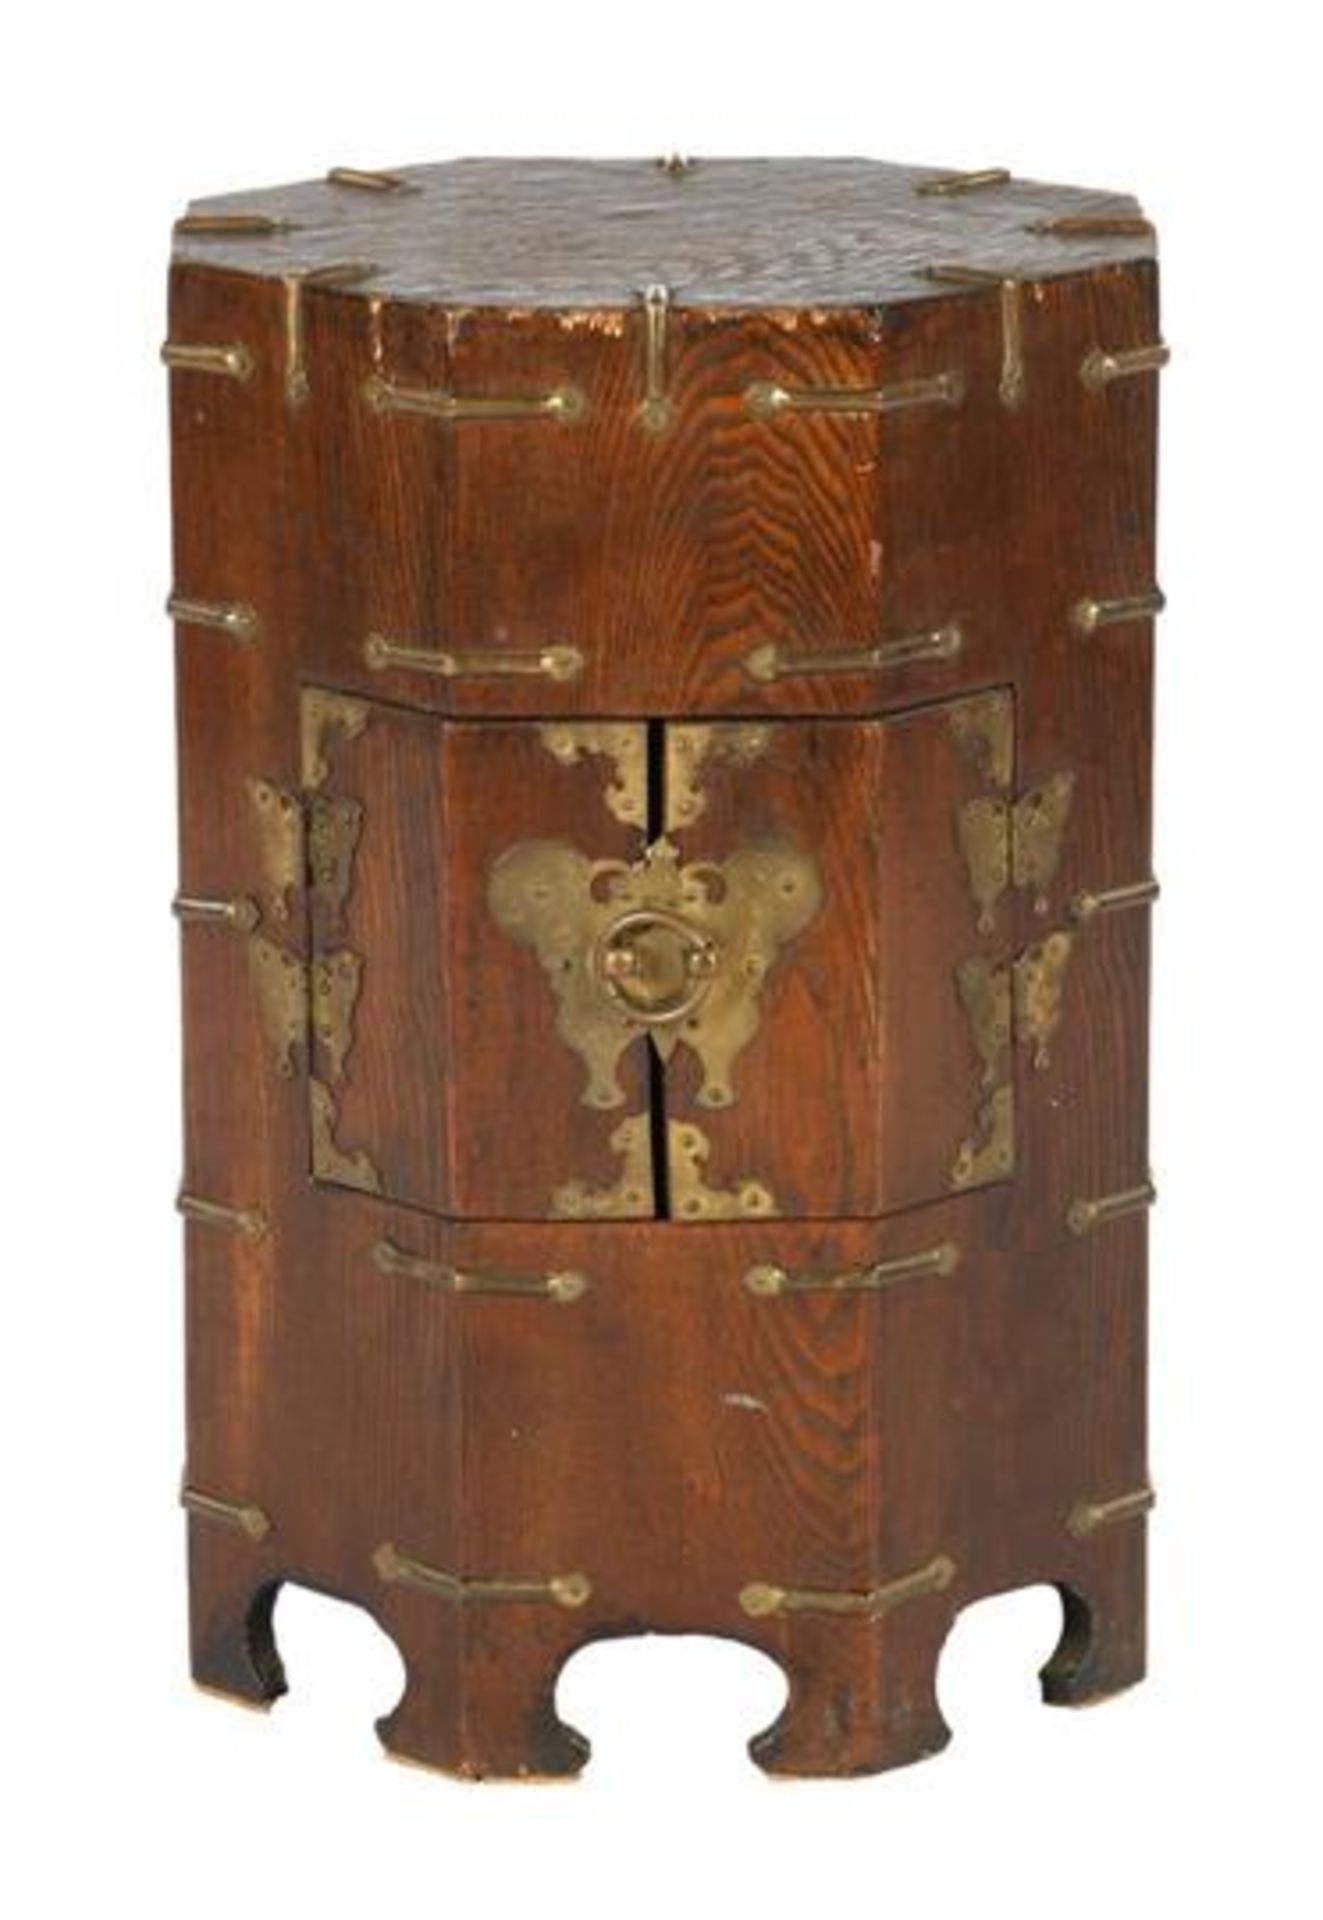 Asian wooden octagonal 2-door cabinet 45 cm high, 33 cm diameter